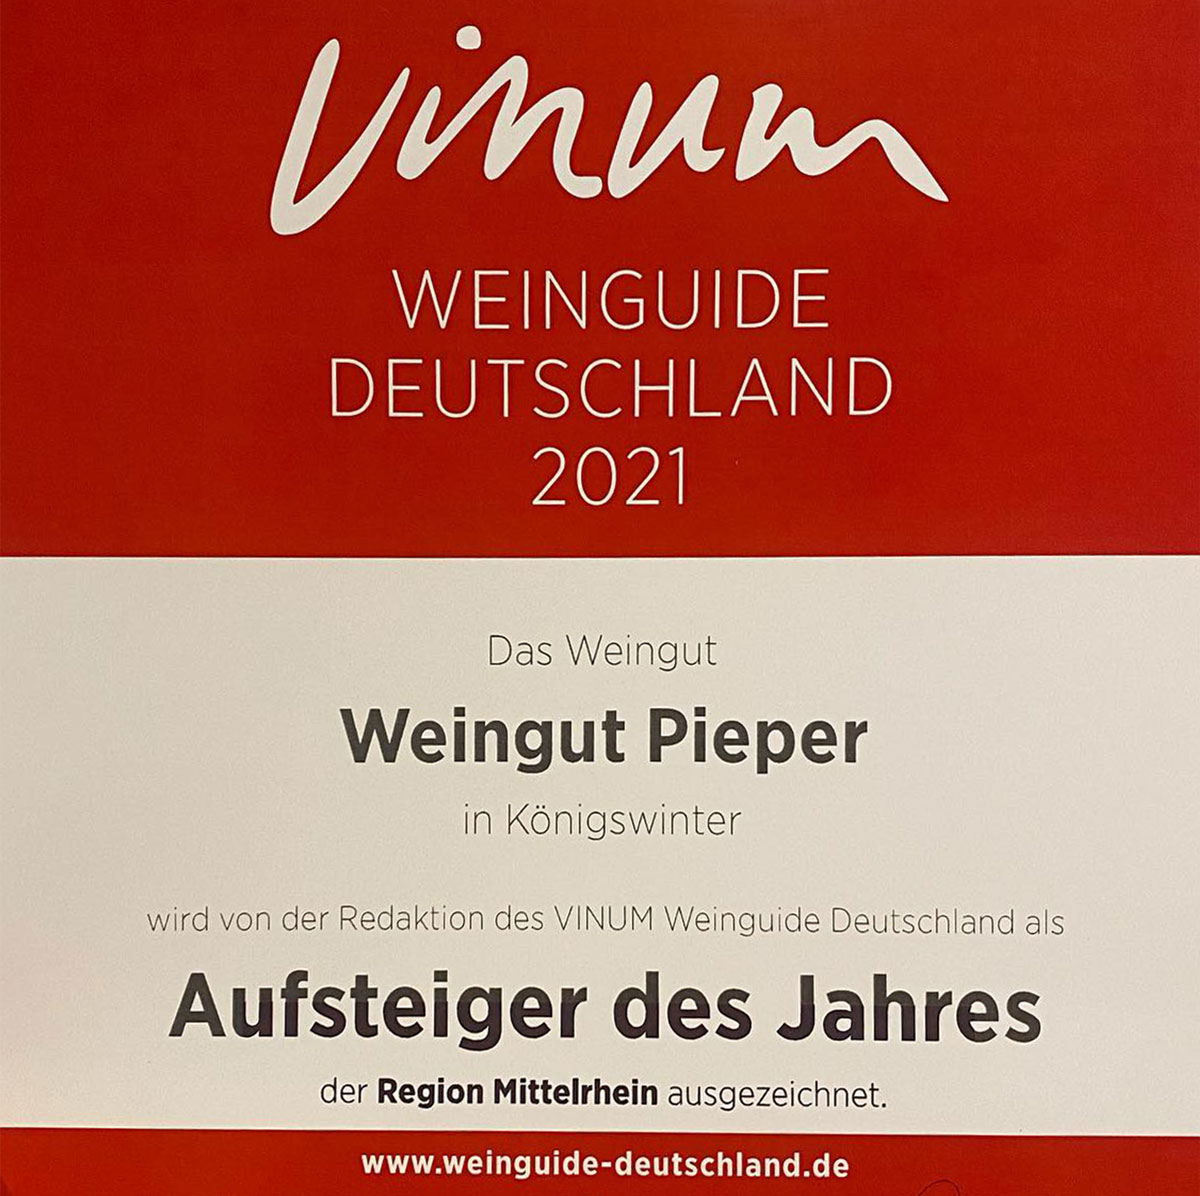 Urkunde VINUM Weinguide 2021 - Weingut Pieper: Aufsteiger des Jahres Mittelrhein